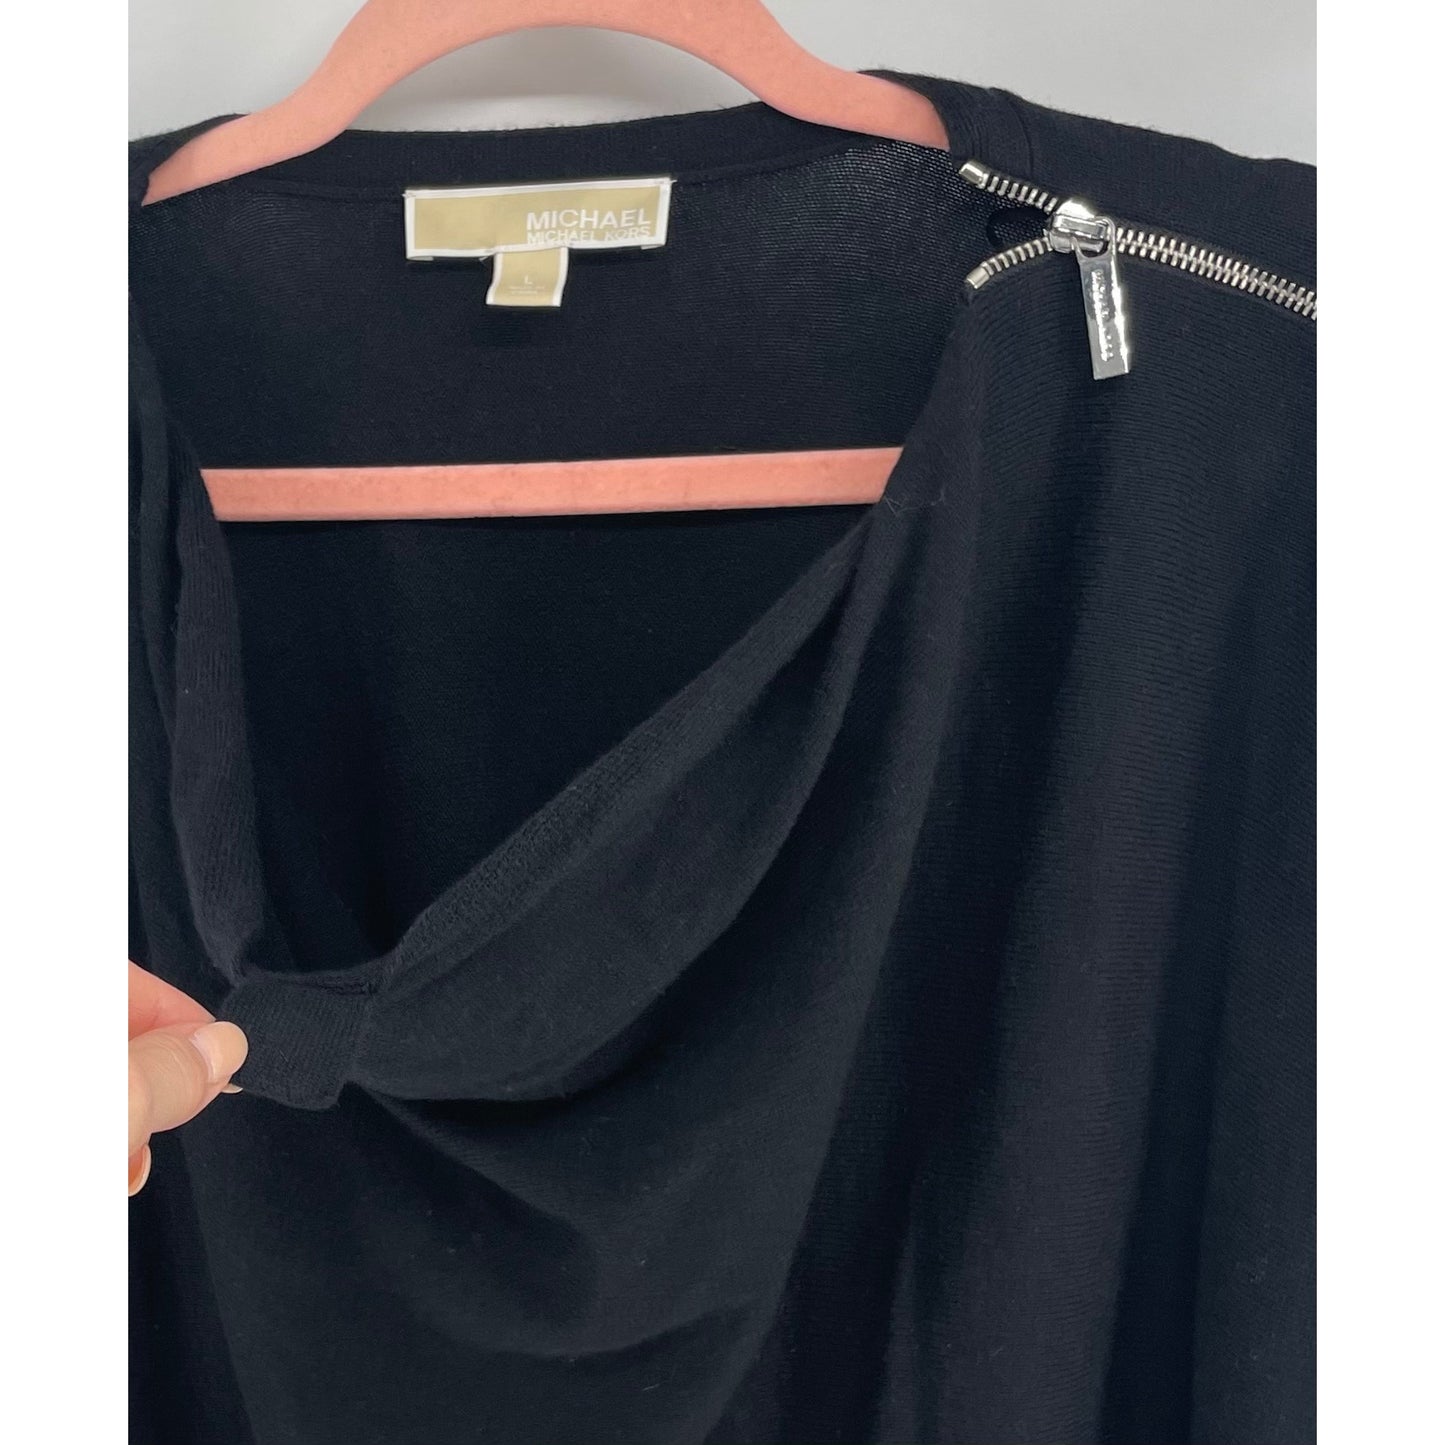 Michael Kors Women's Size Large Black 3/4 Quarter Length Sleeve Black Midi Sheath Dress